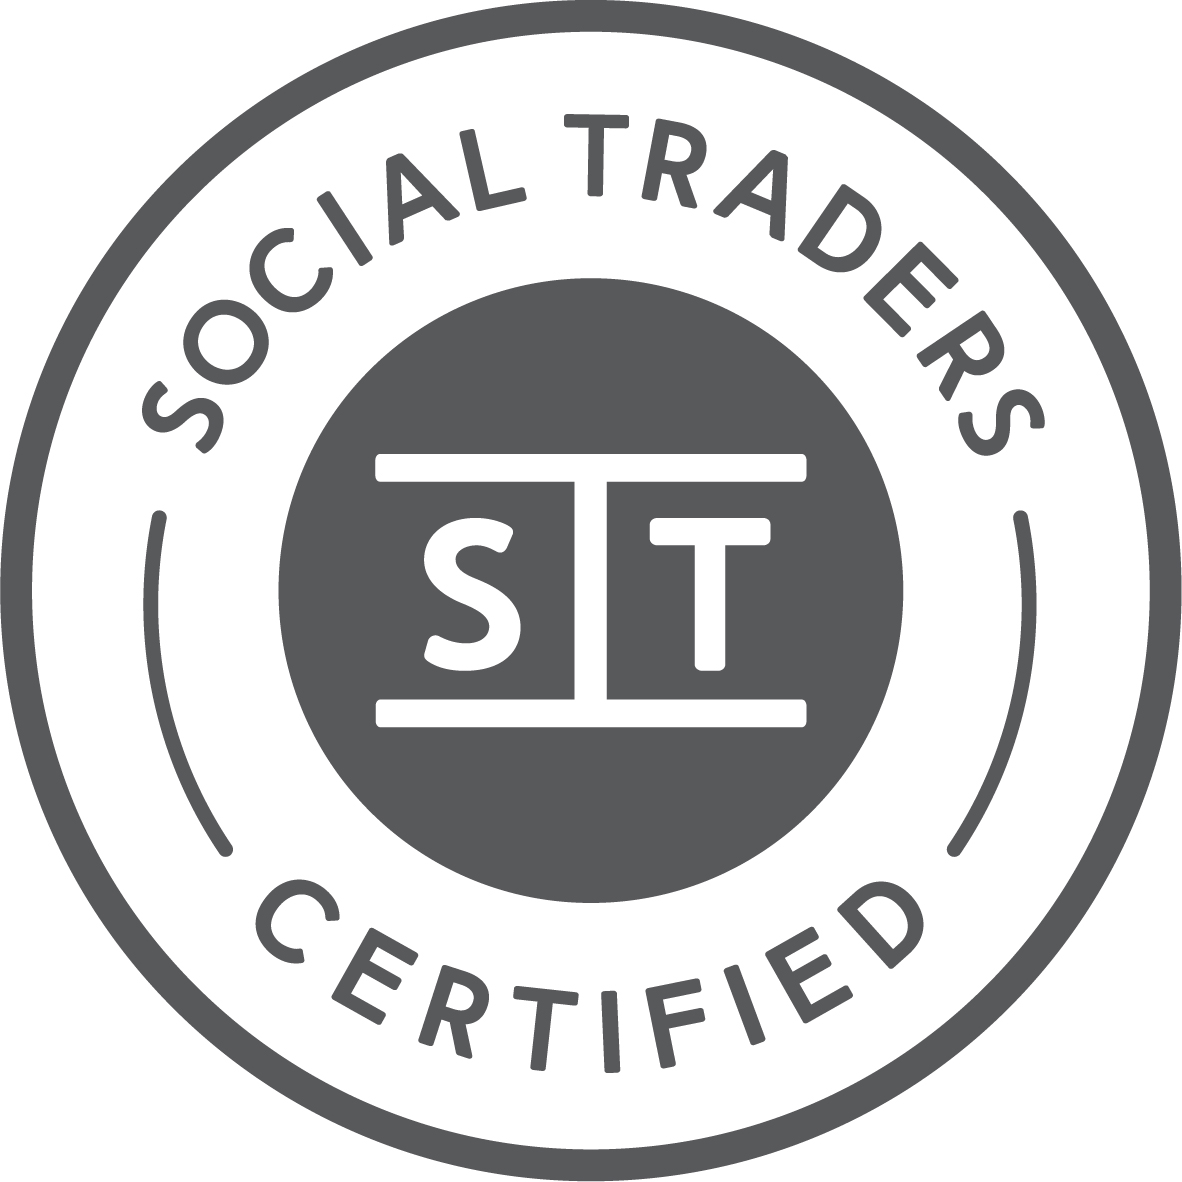 Social Traders Logo